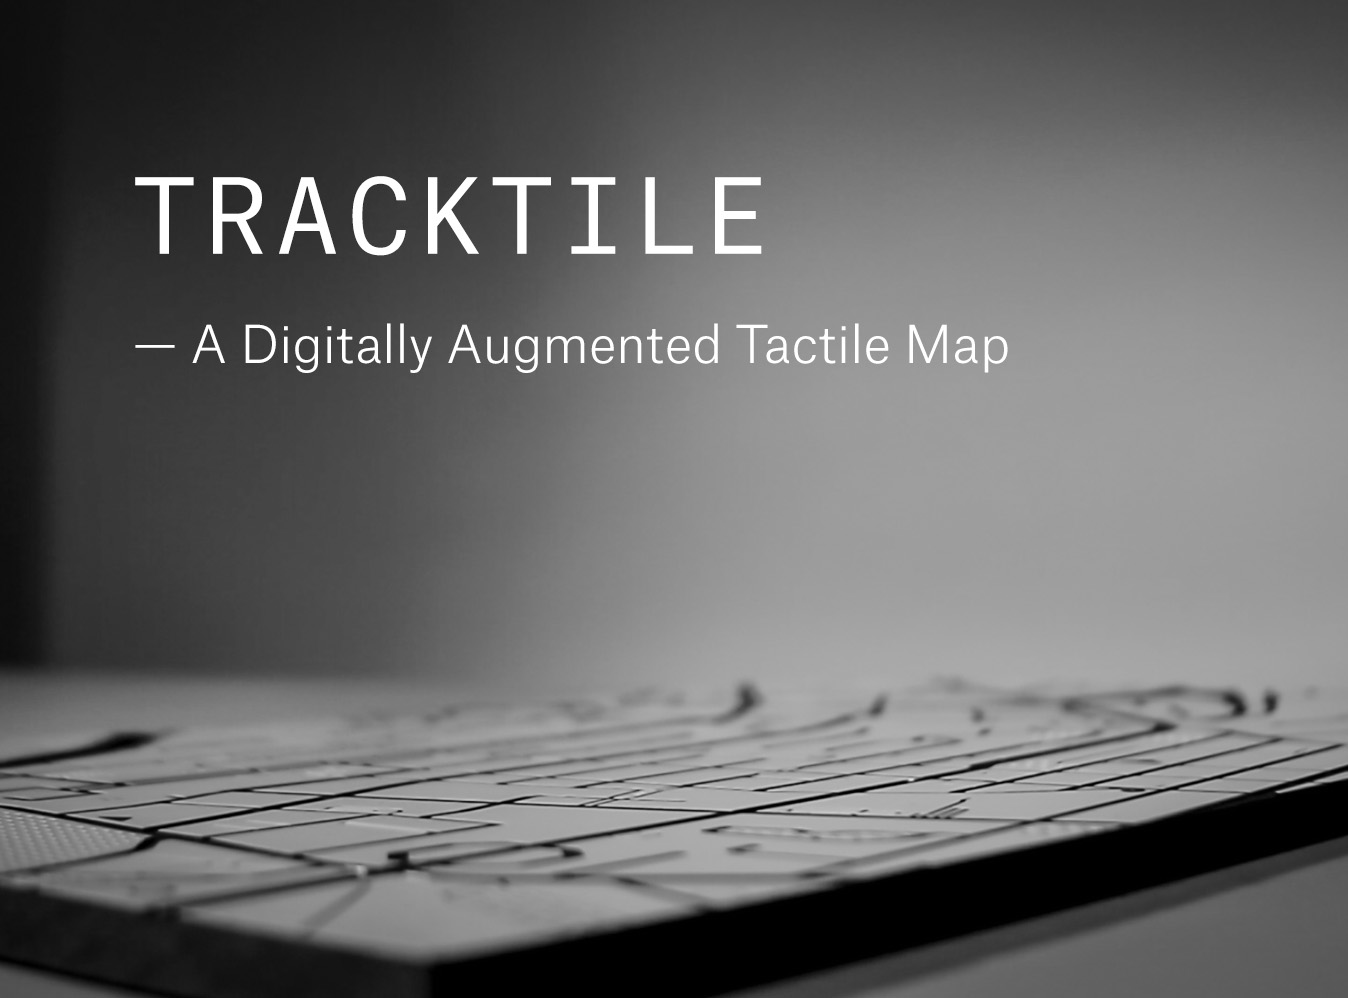 Tracktile by Johannes Herseni, Patrick Oswald, Cécile Zahorka